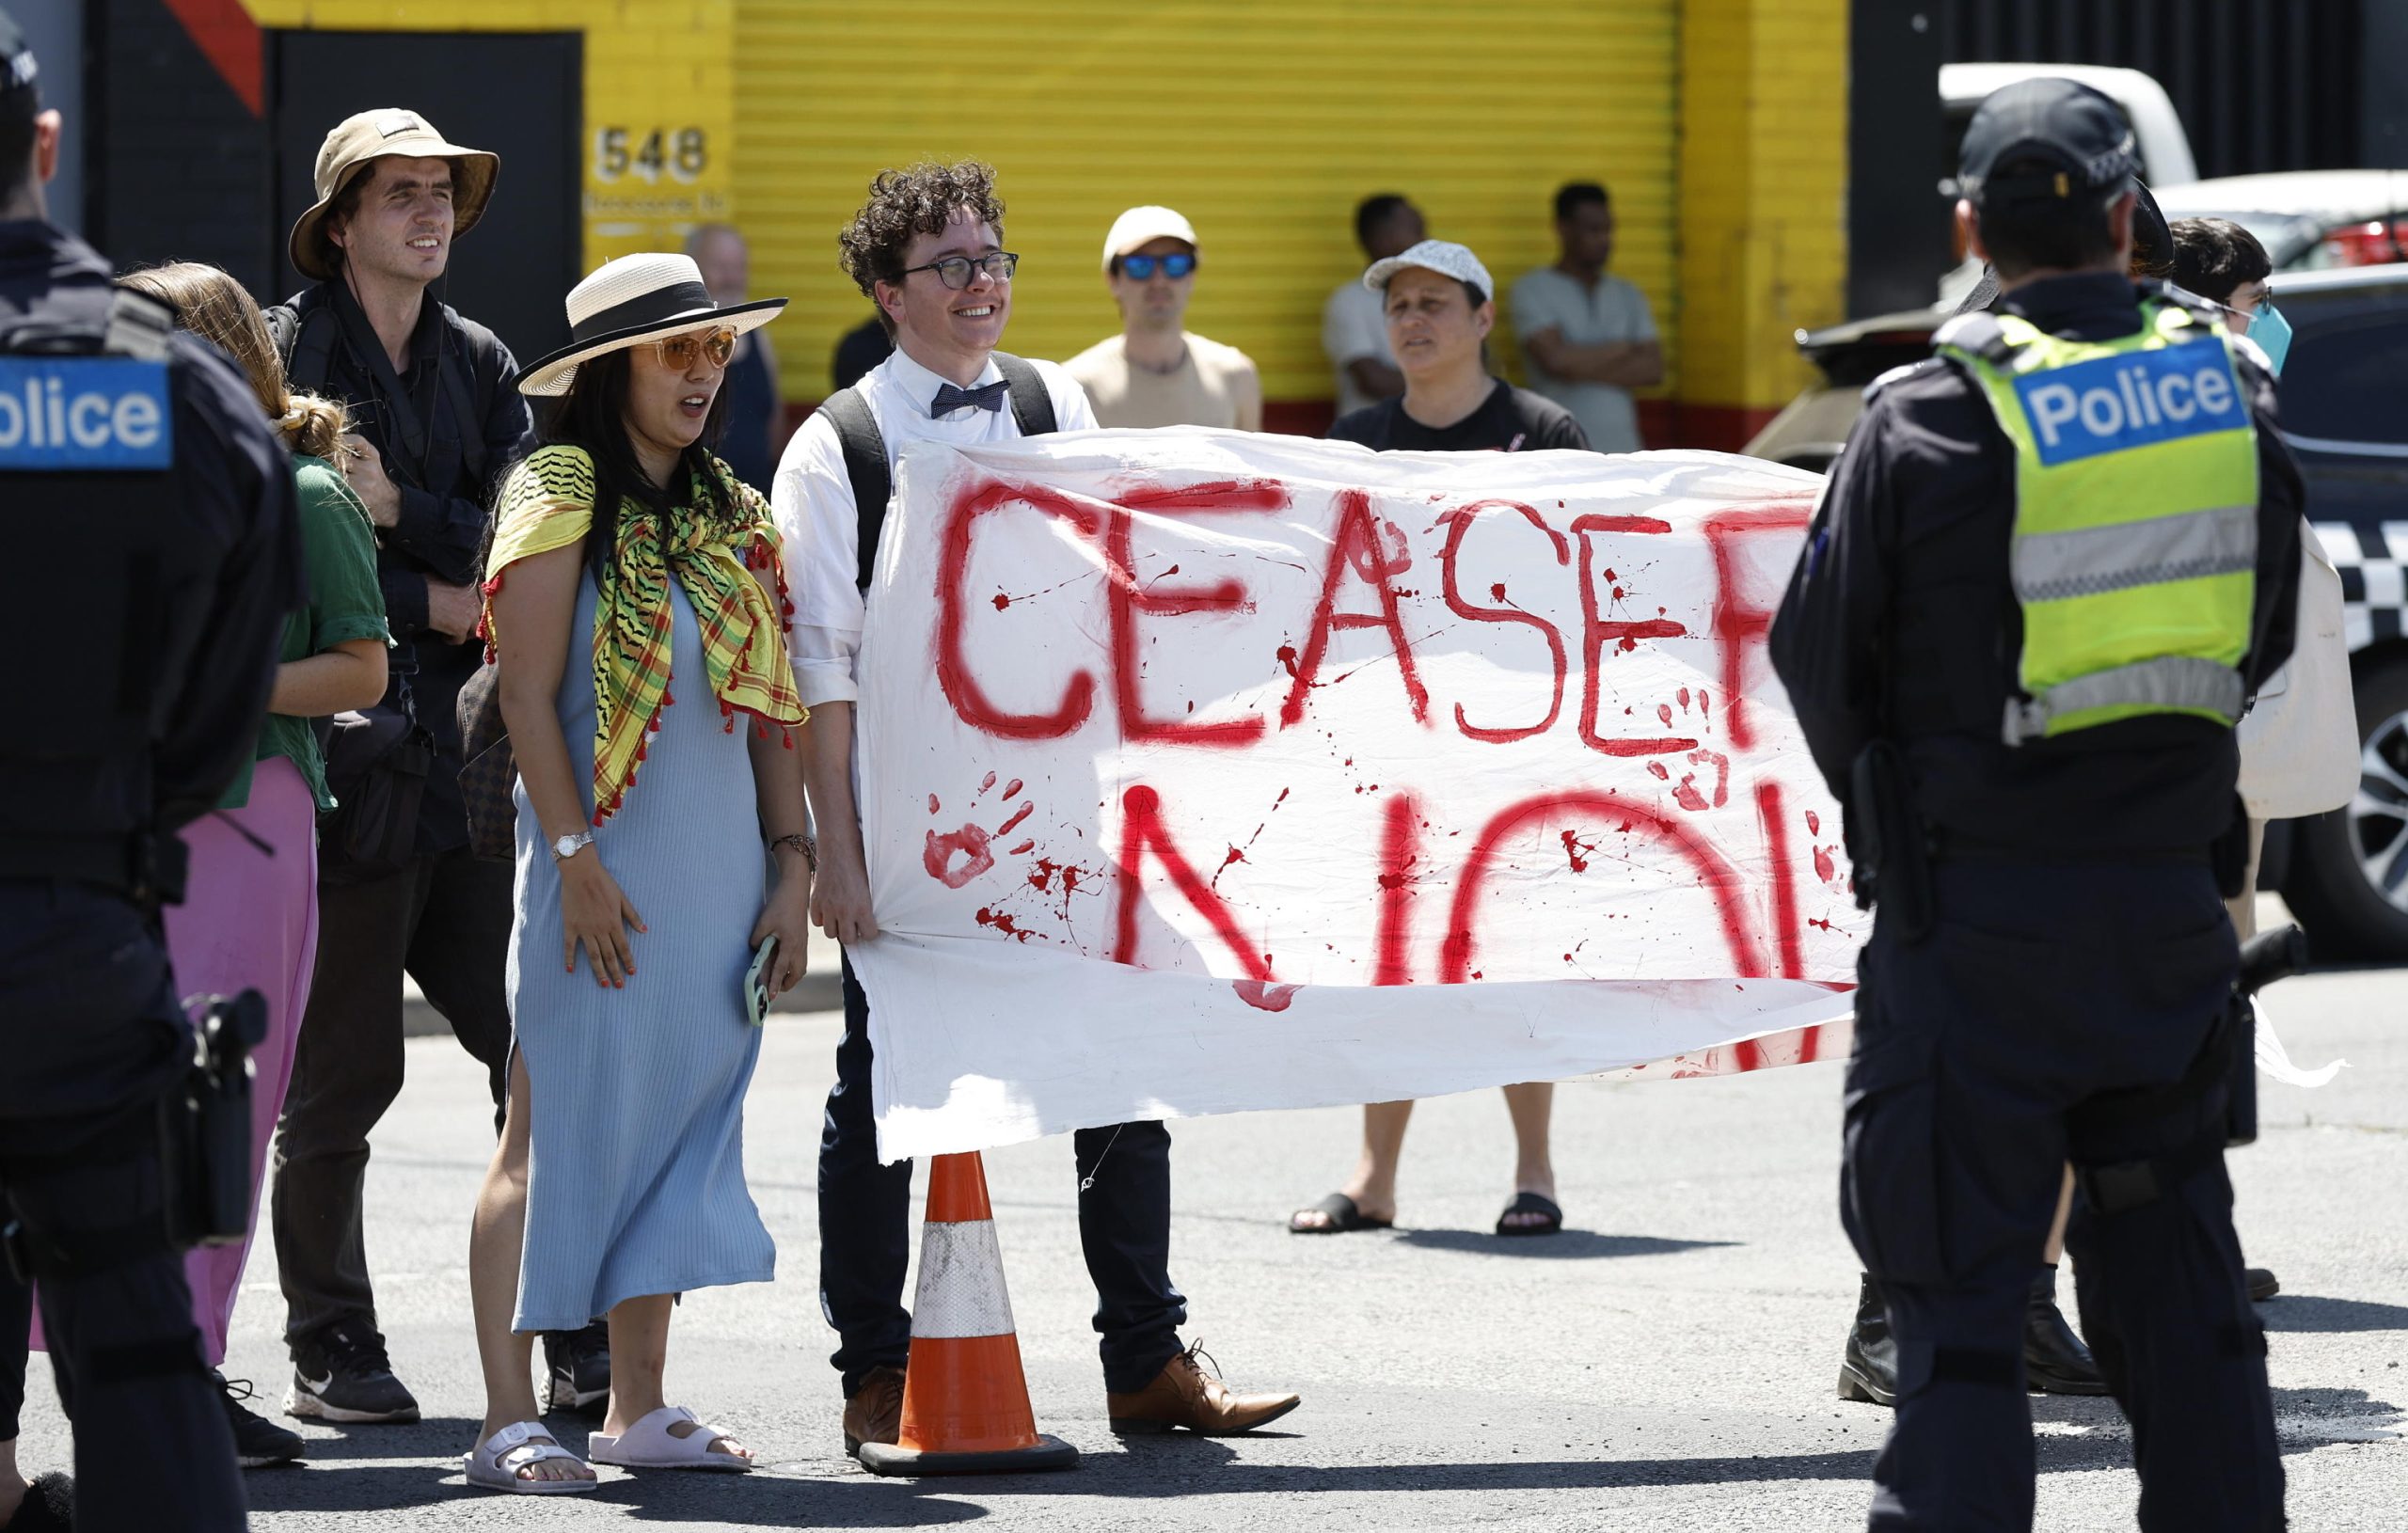 Alcuni manifestanti protestano con uno striscione che simula chiazze di sangue rosse